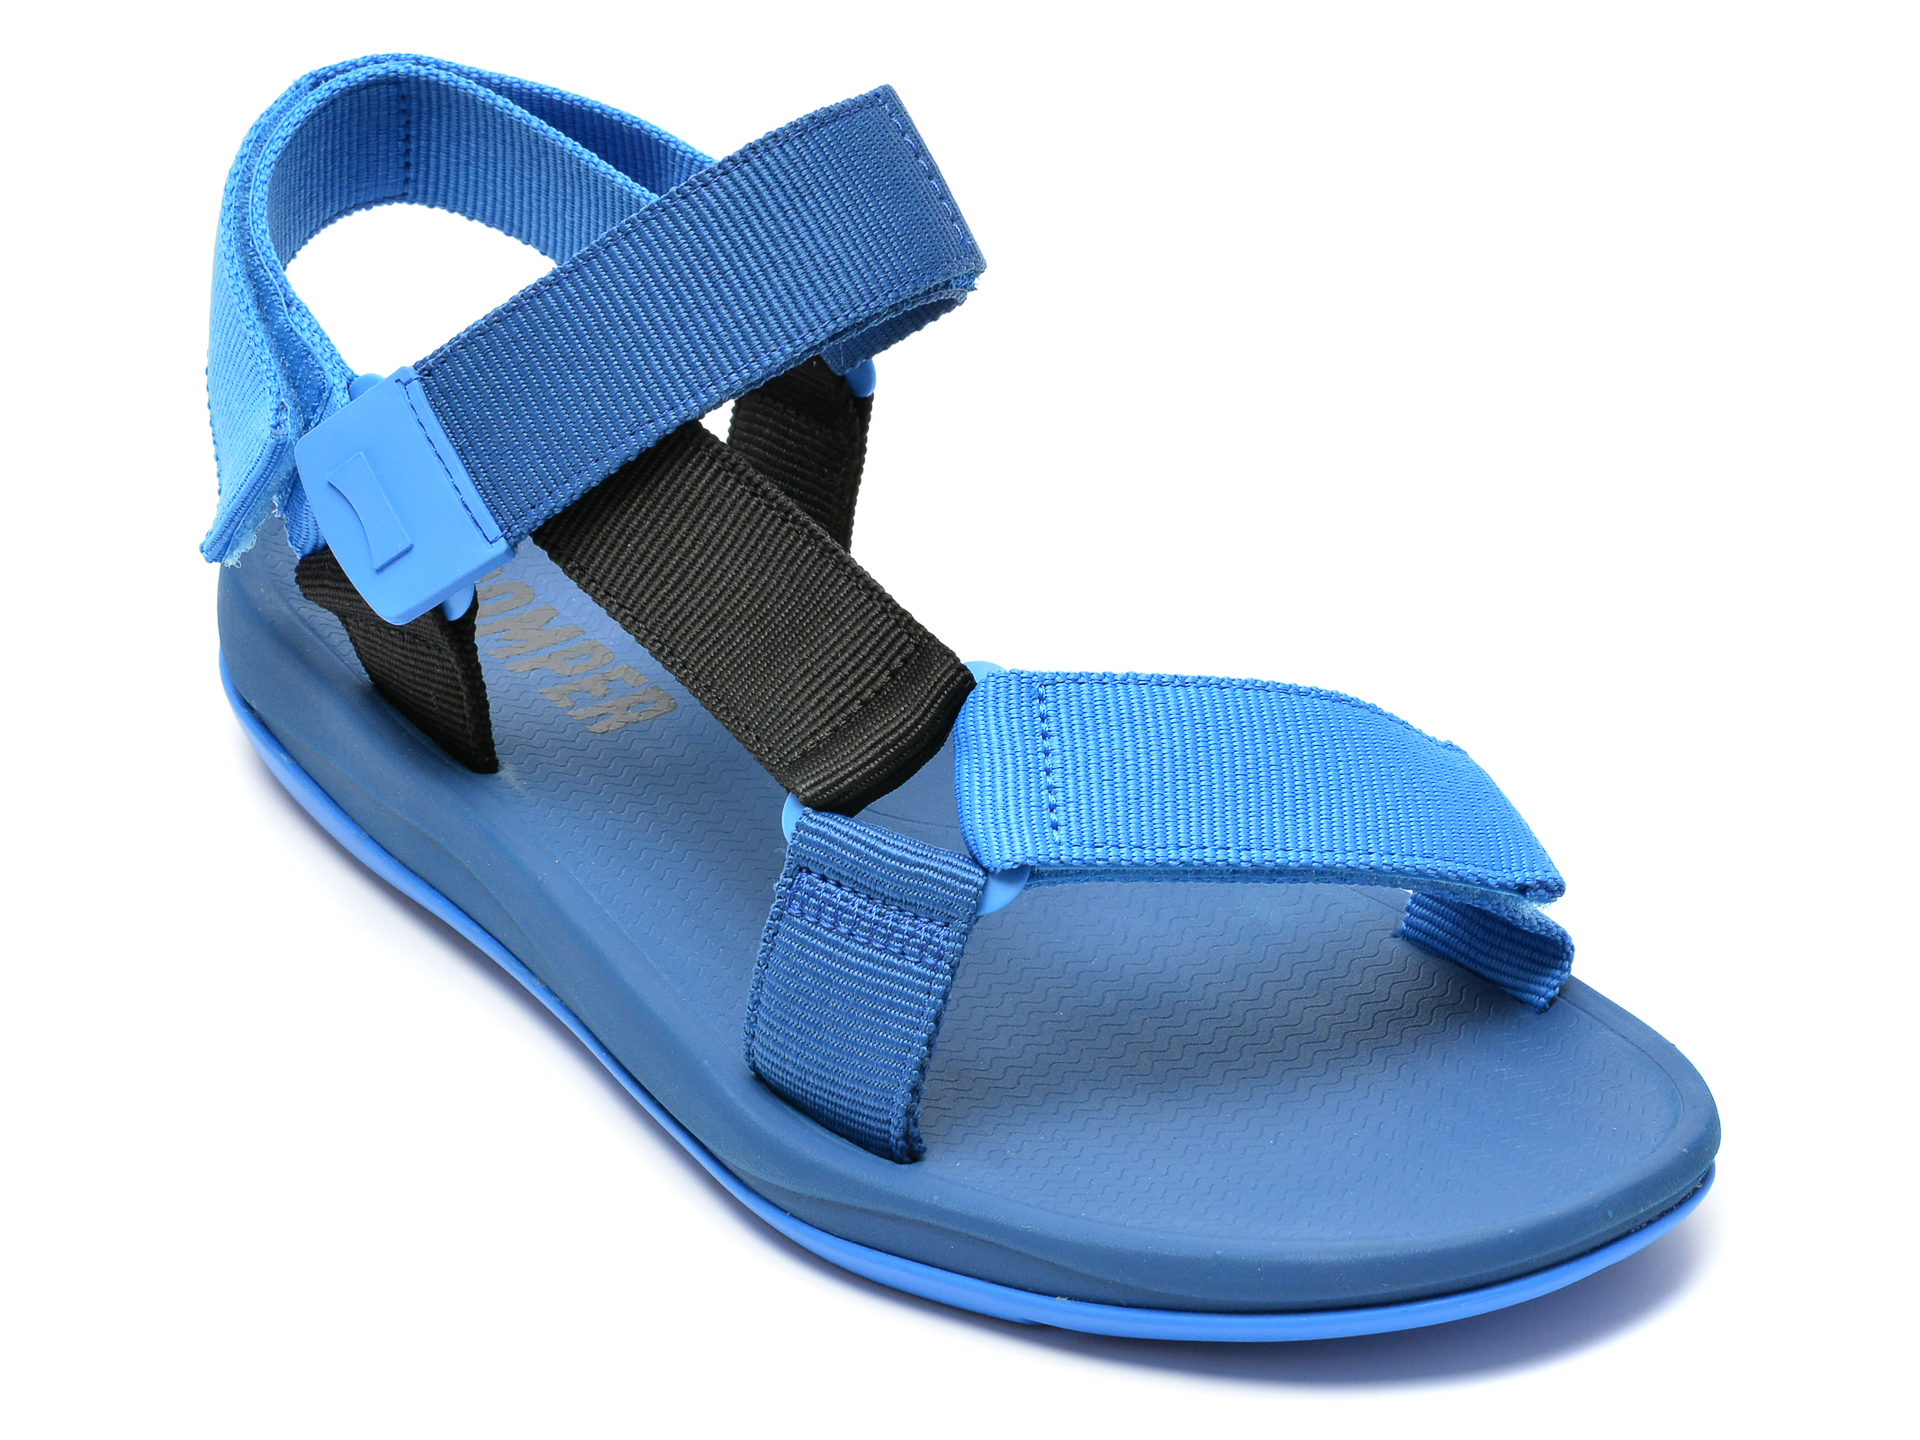 Sandale CAMPER albastre, K100539, din material textil